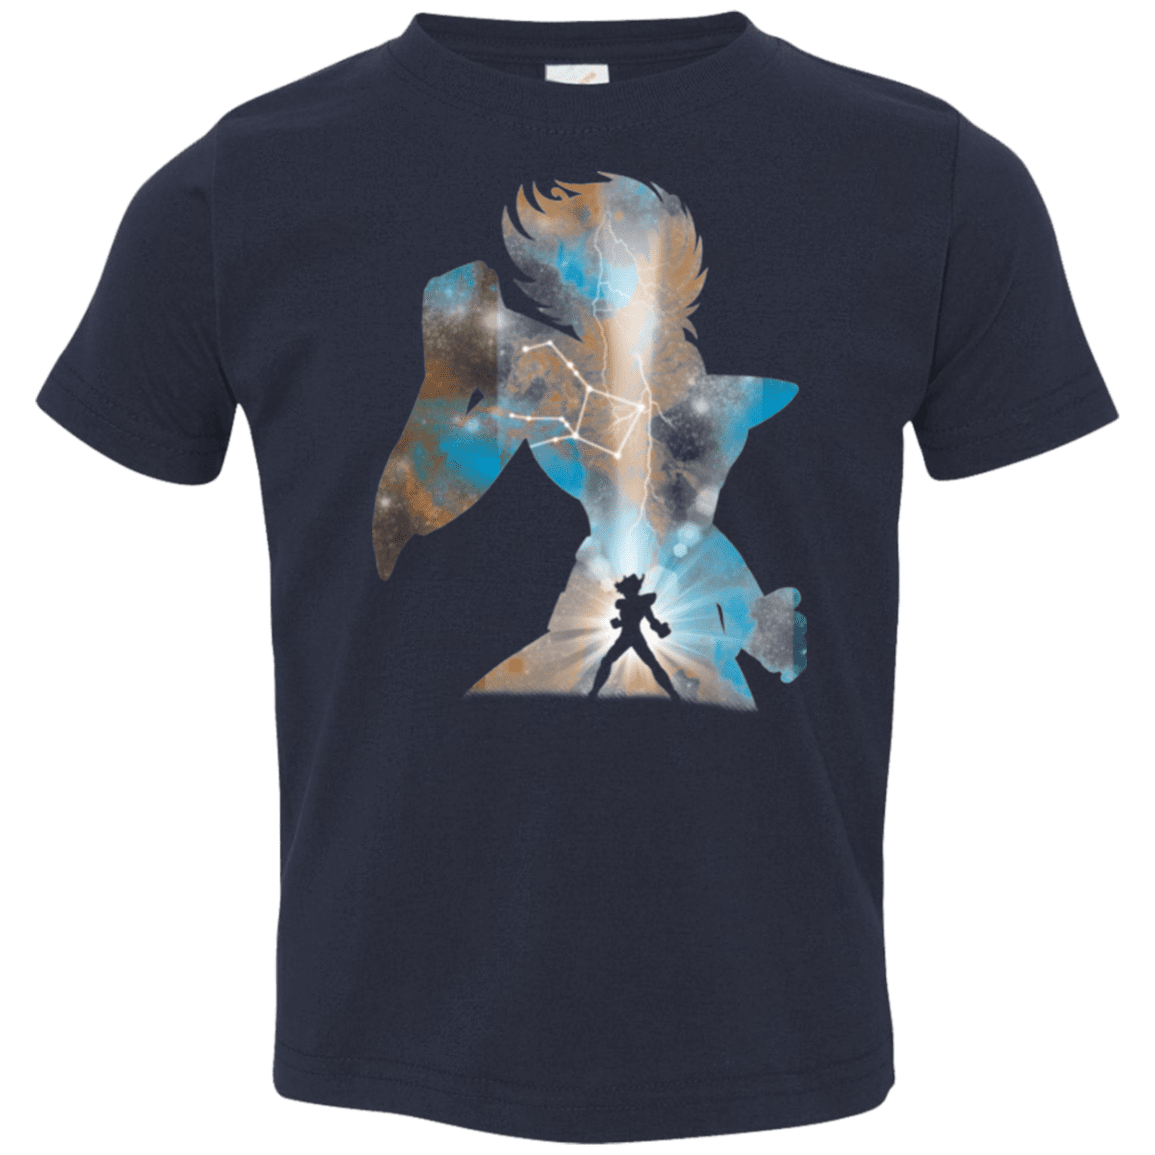 T-Shirts Navy / 2T The Pegasus Toddler Premium T-Shirt